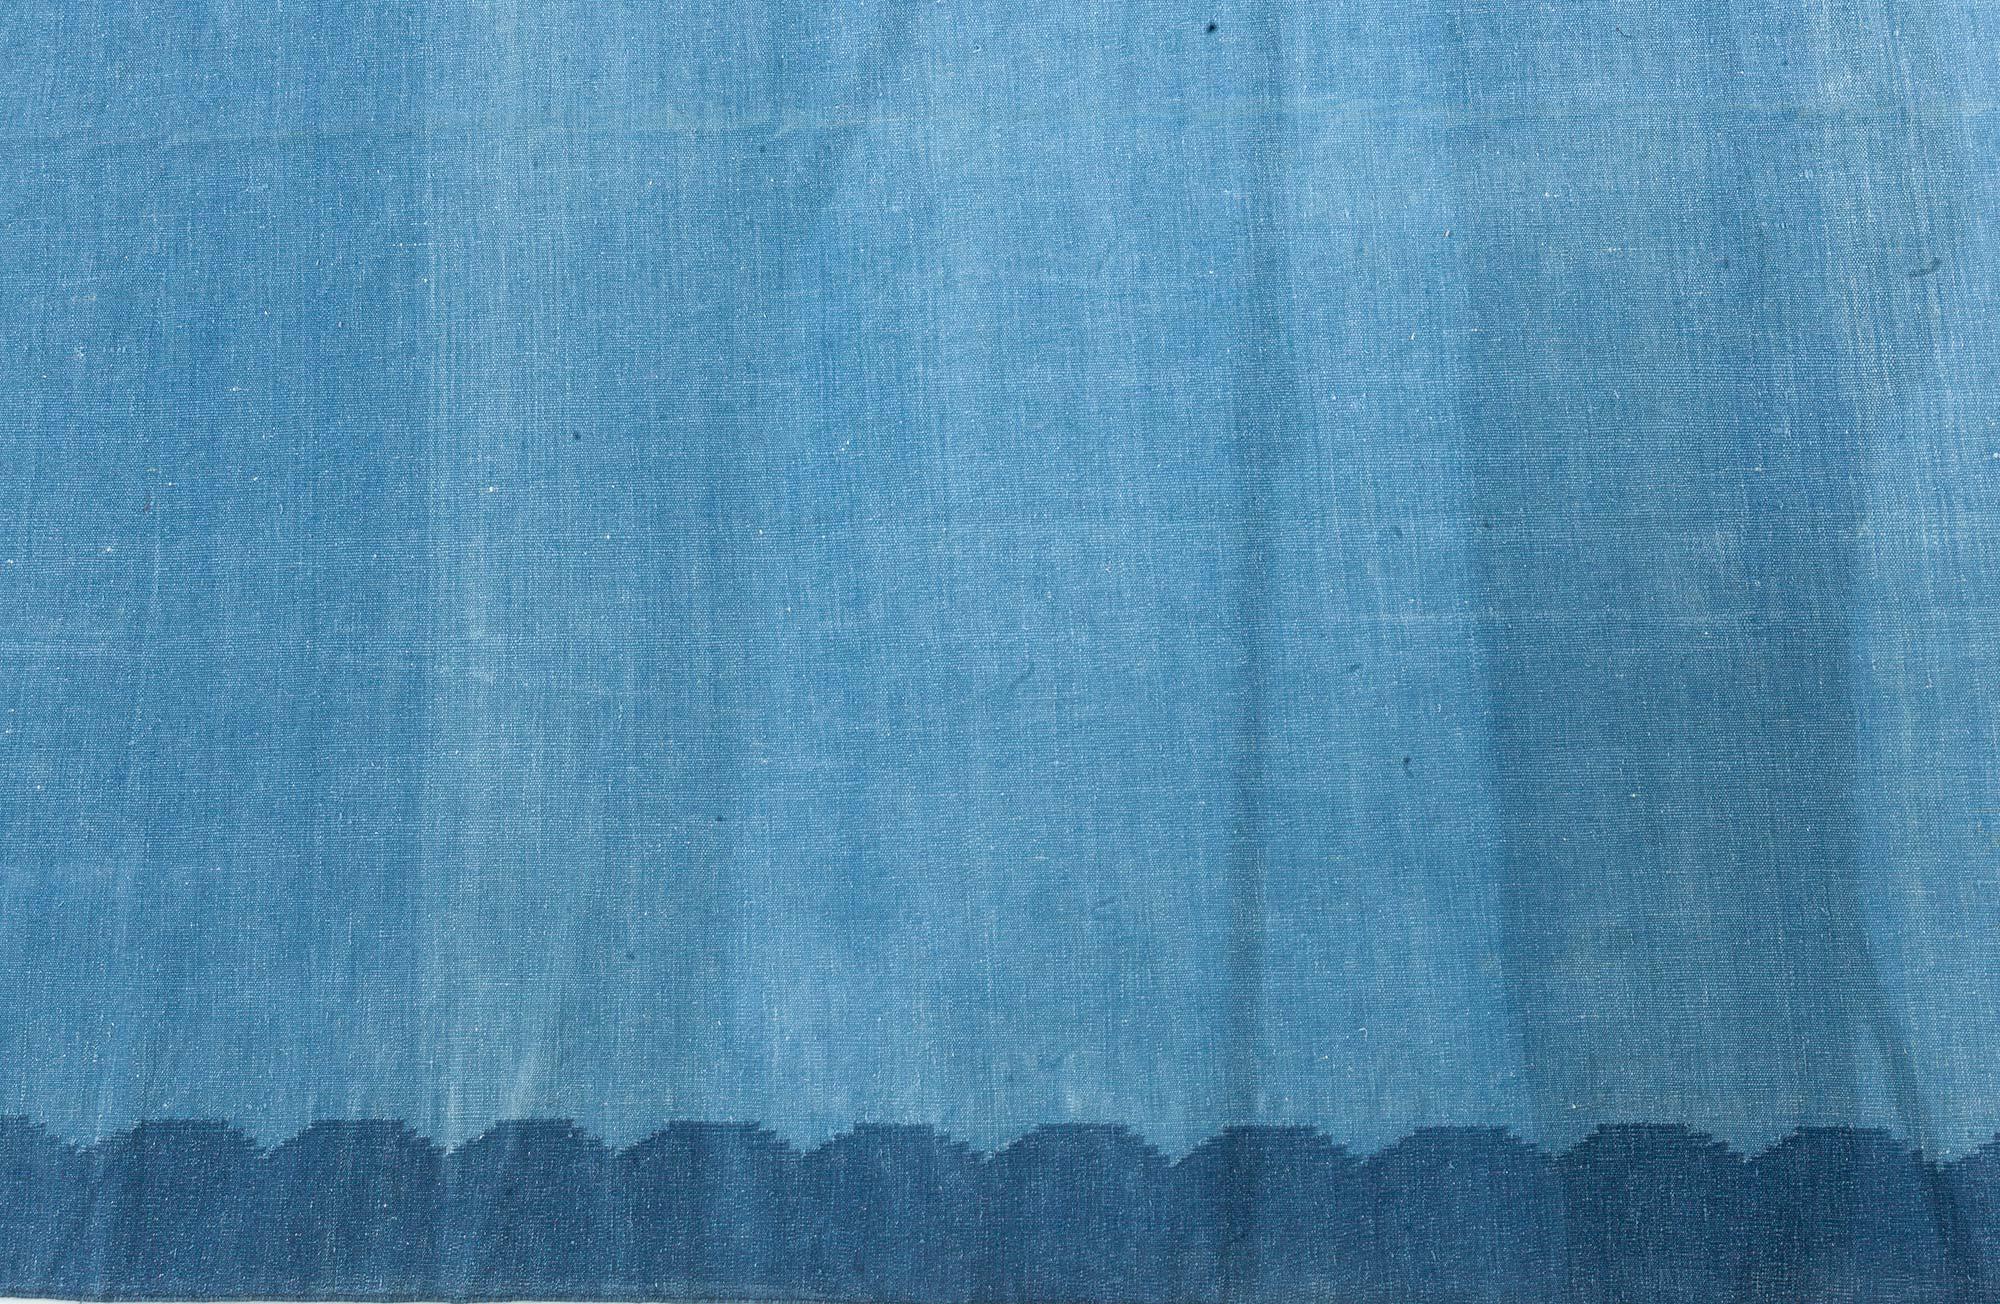 Vintage Indian Dhurrie blau Teppich
Größe: 10'0